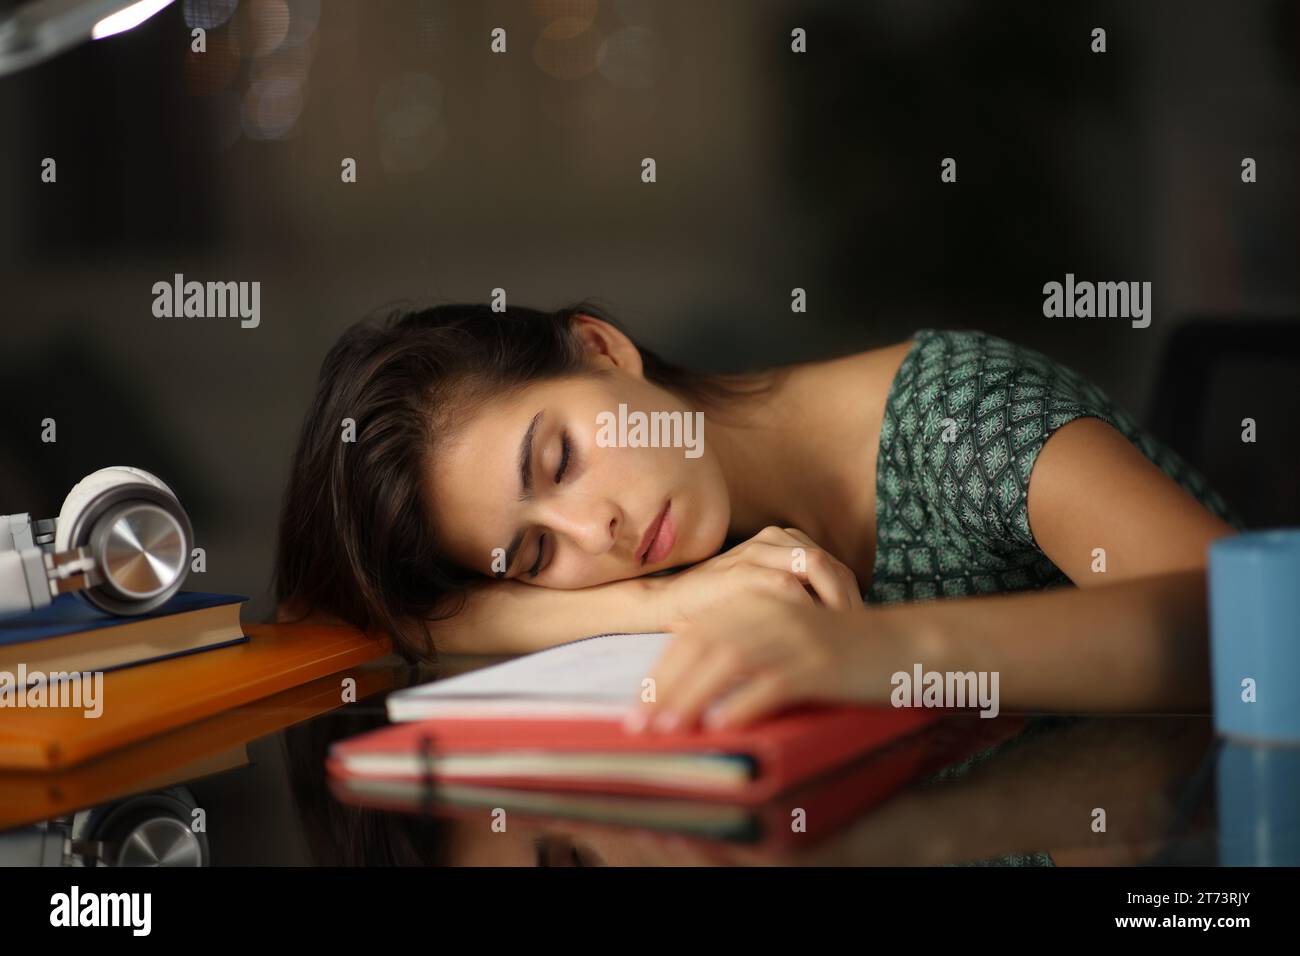 Étudiant fatigué surchargé de travail dormant sur des notes dans la nuit à la maison Banque D'Images